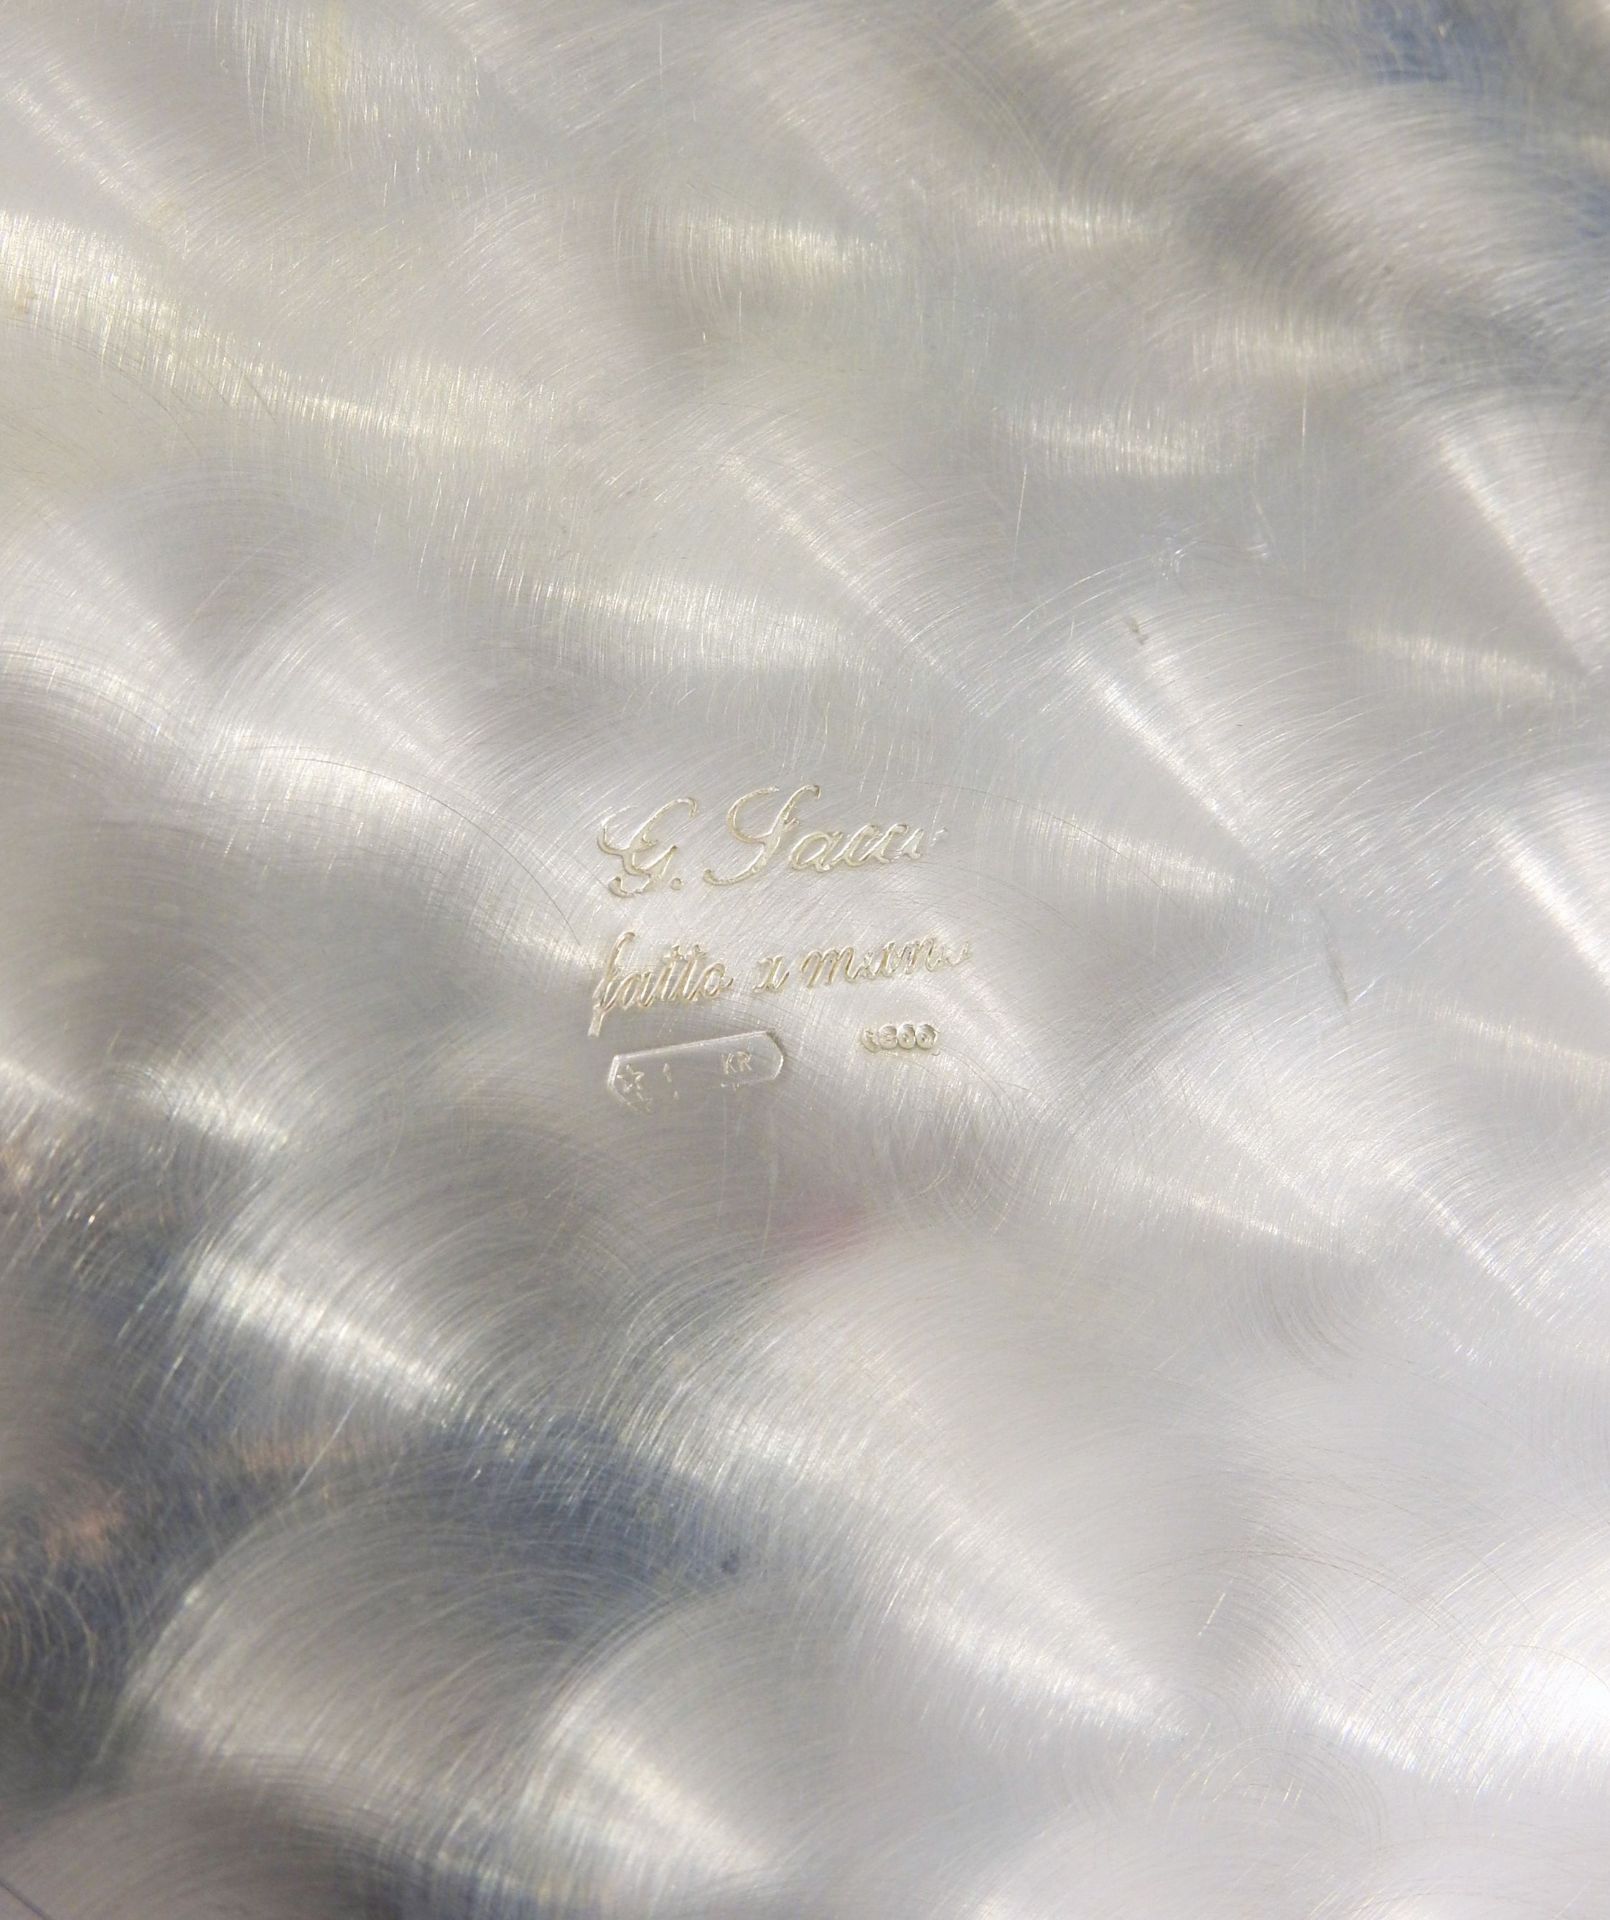 Großer feiner Weinkühler Silber 800, am Boden mit Feingehaltsstempel, Land- und Hers - Image 2 of 3